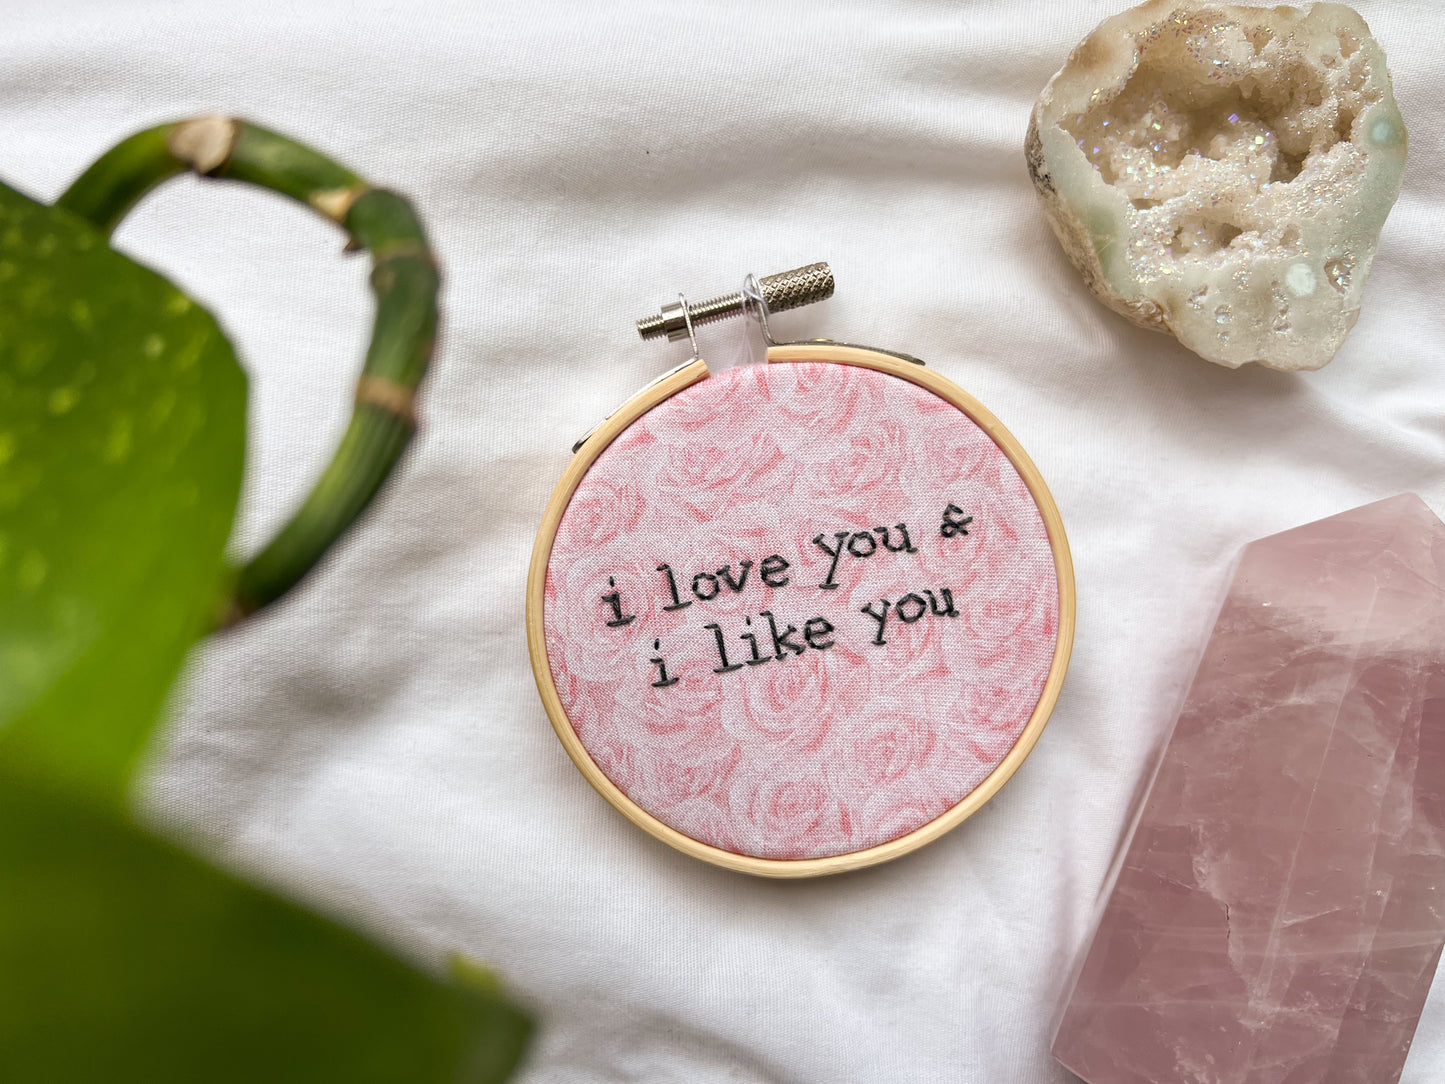 i love you & i like you embroidery hoop